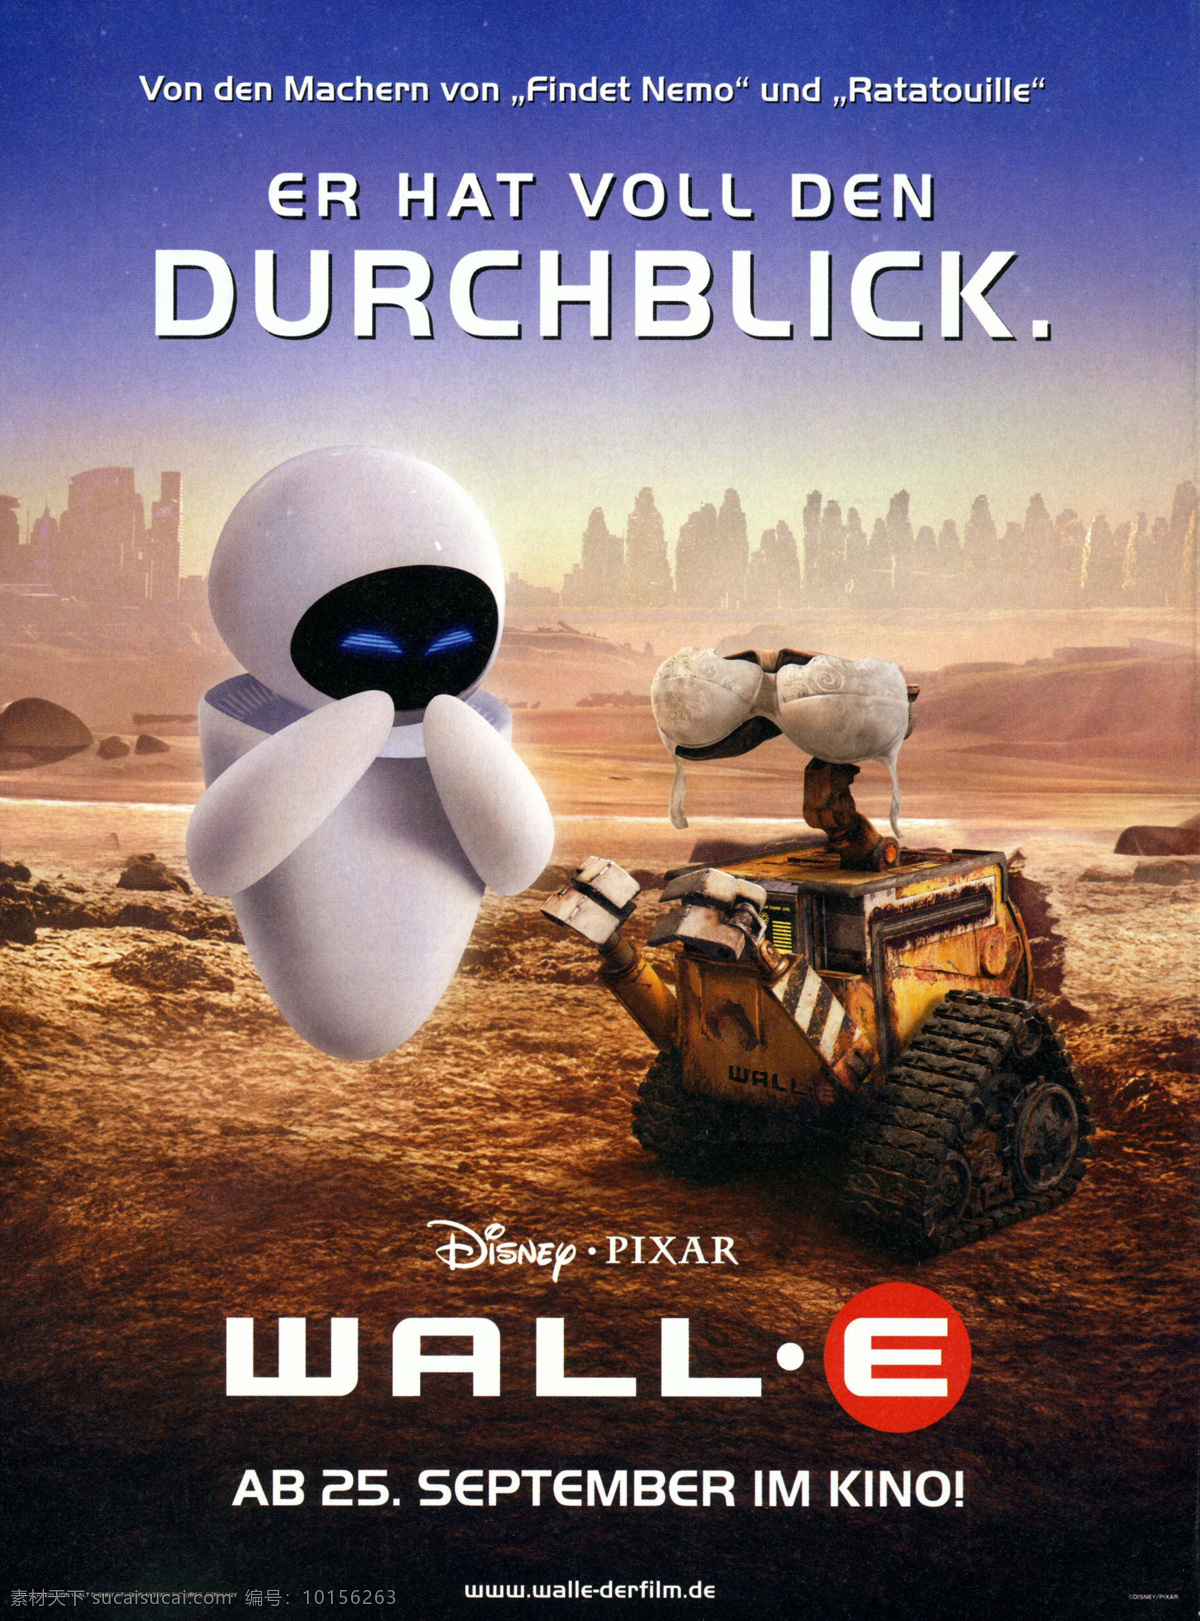 机器人总动员 机器人 总动员 迪斯尼 瓦力 伊娃 迪士尼动画 德国版 正式版 皮克斯 皮克斯动画 动画电影 电影海报 海报 经典动画电影 pixar 文化艺术 影视娱乐